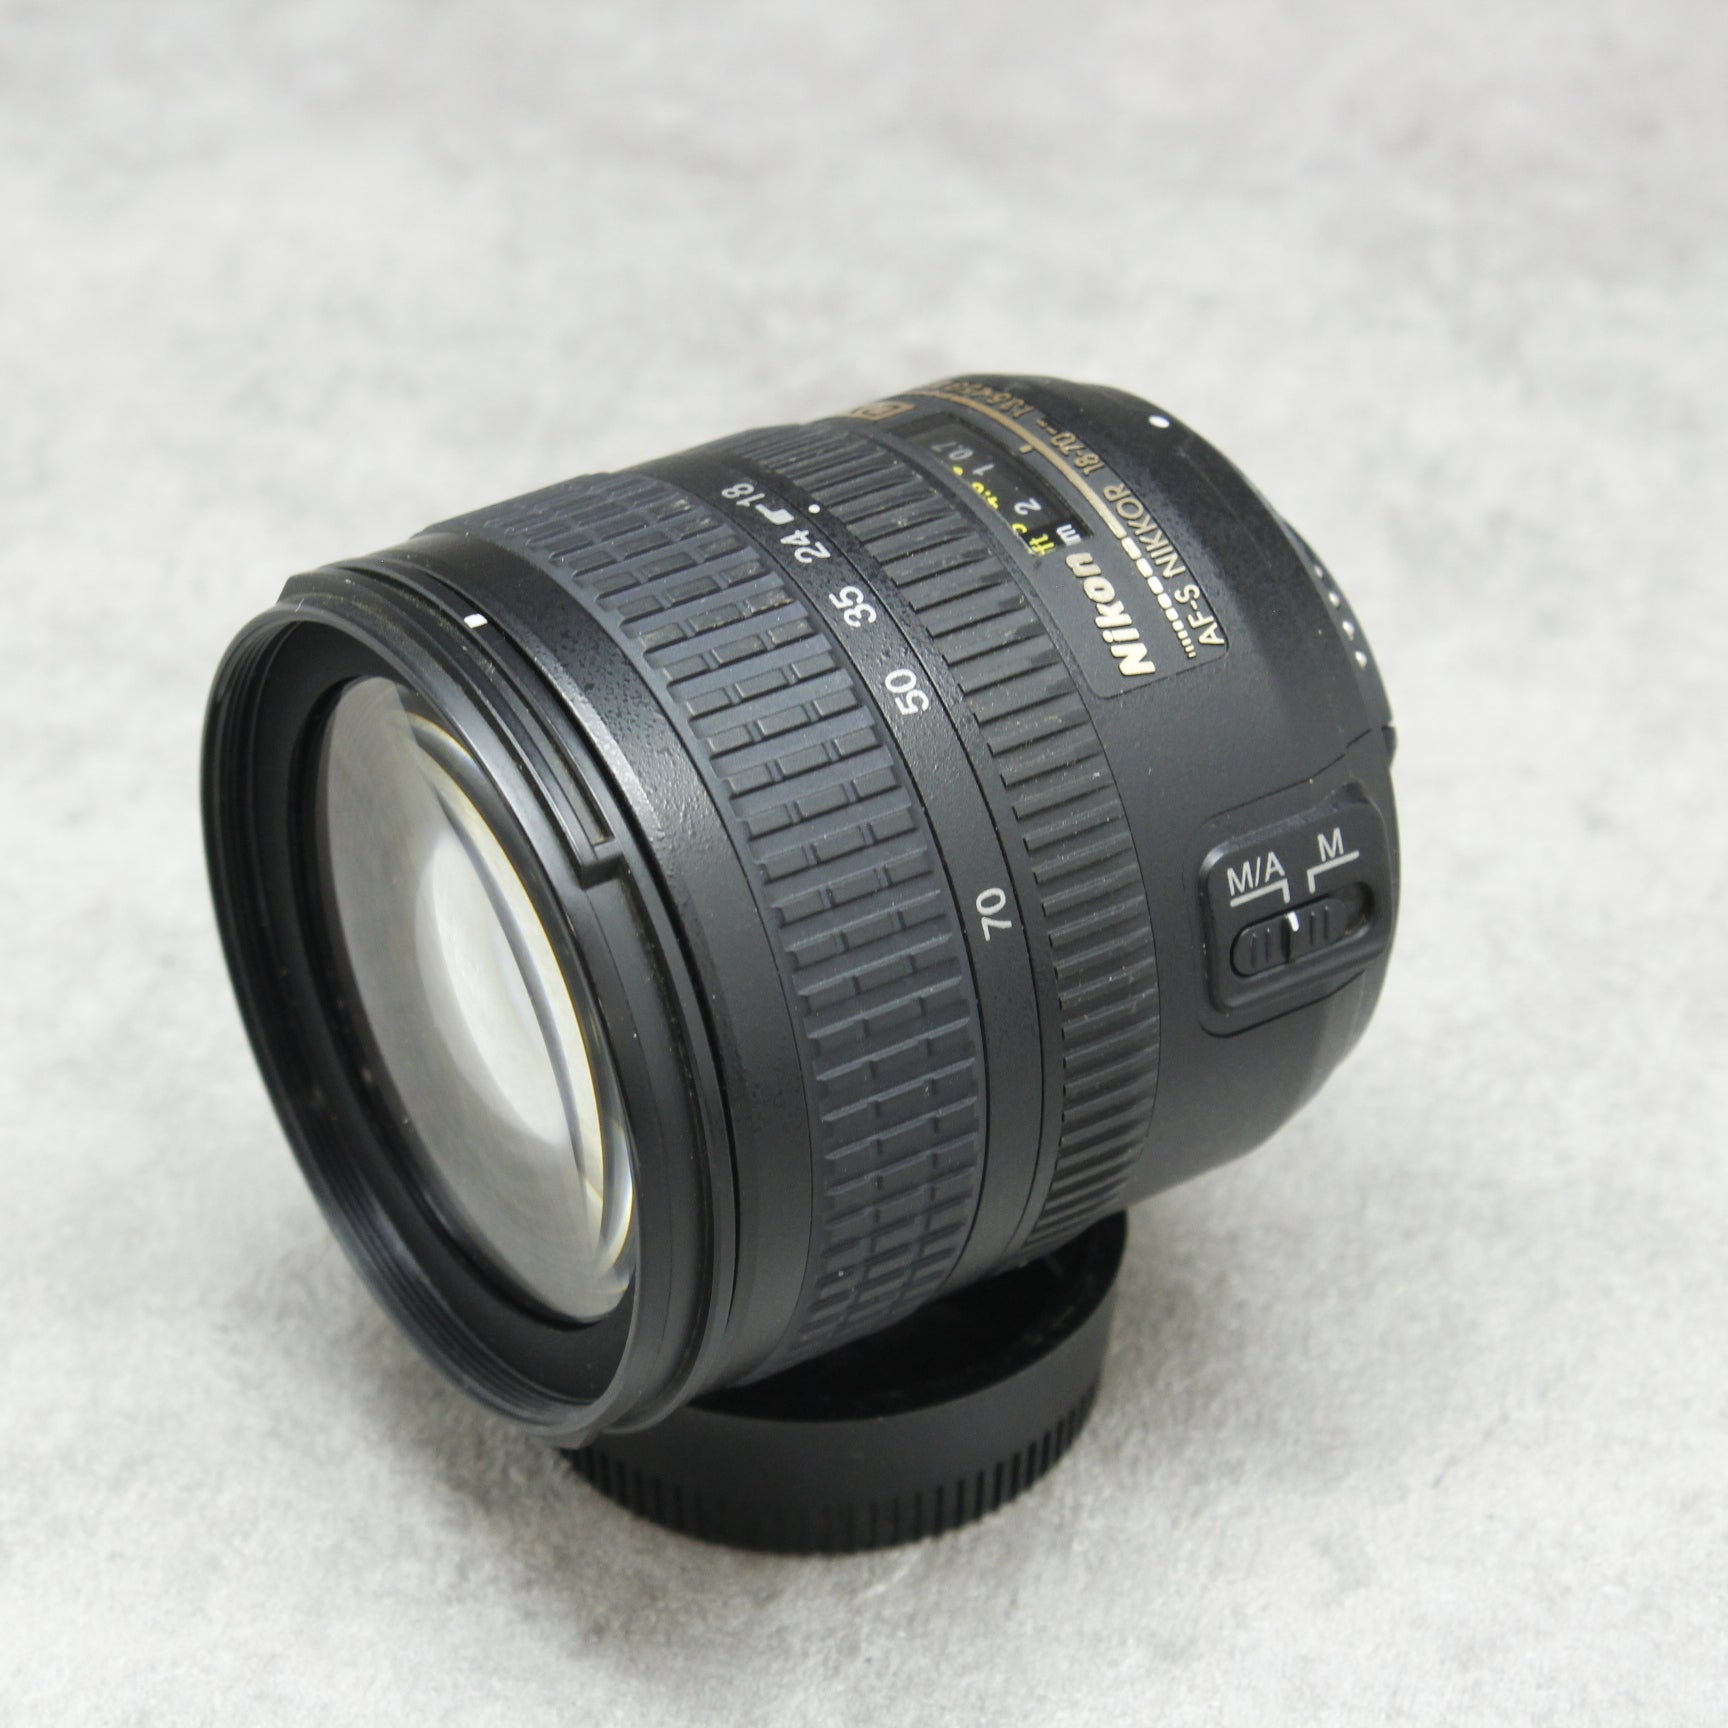 中古品 Nikon AF-S DX Zoom-Nikkor 18-70mm f/3.5-4.5G IF-ED ☆4月27 